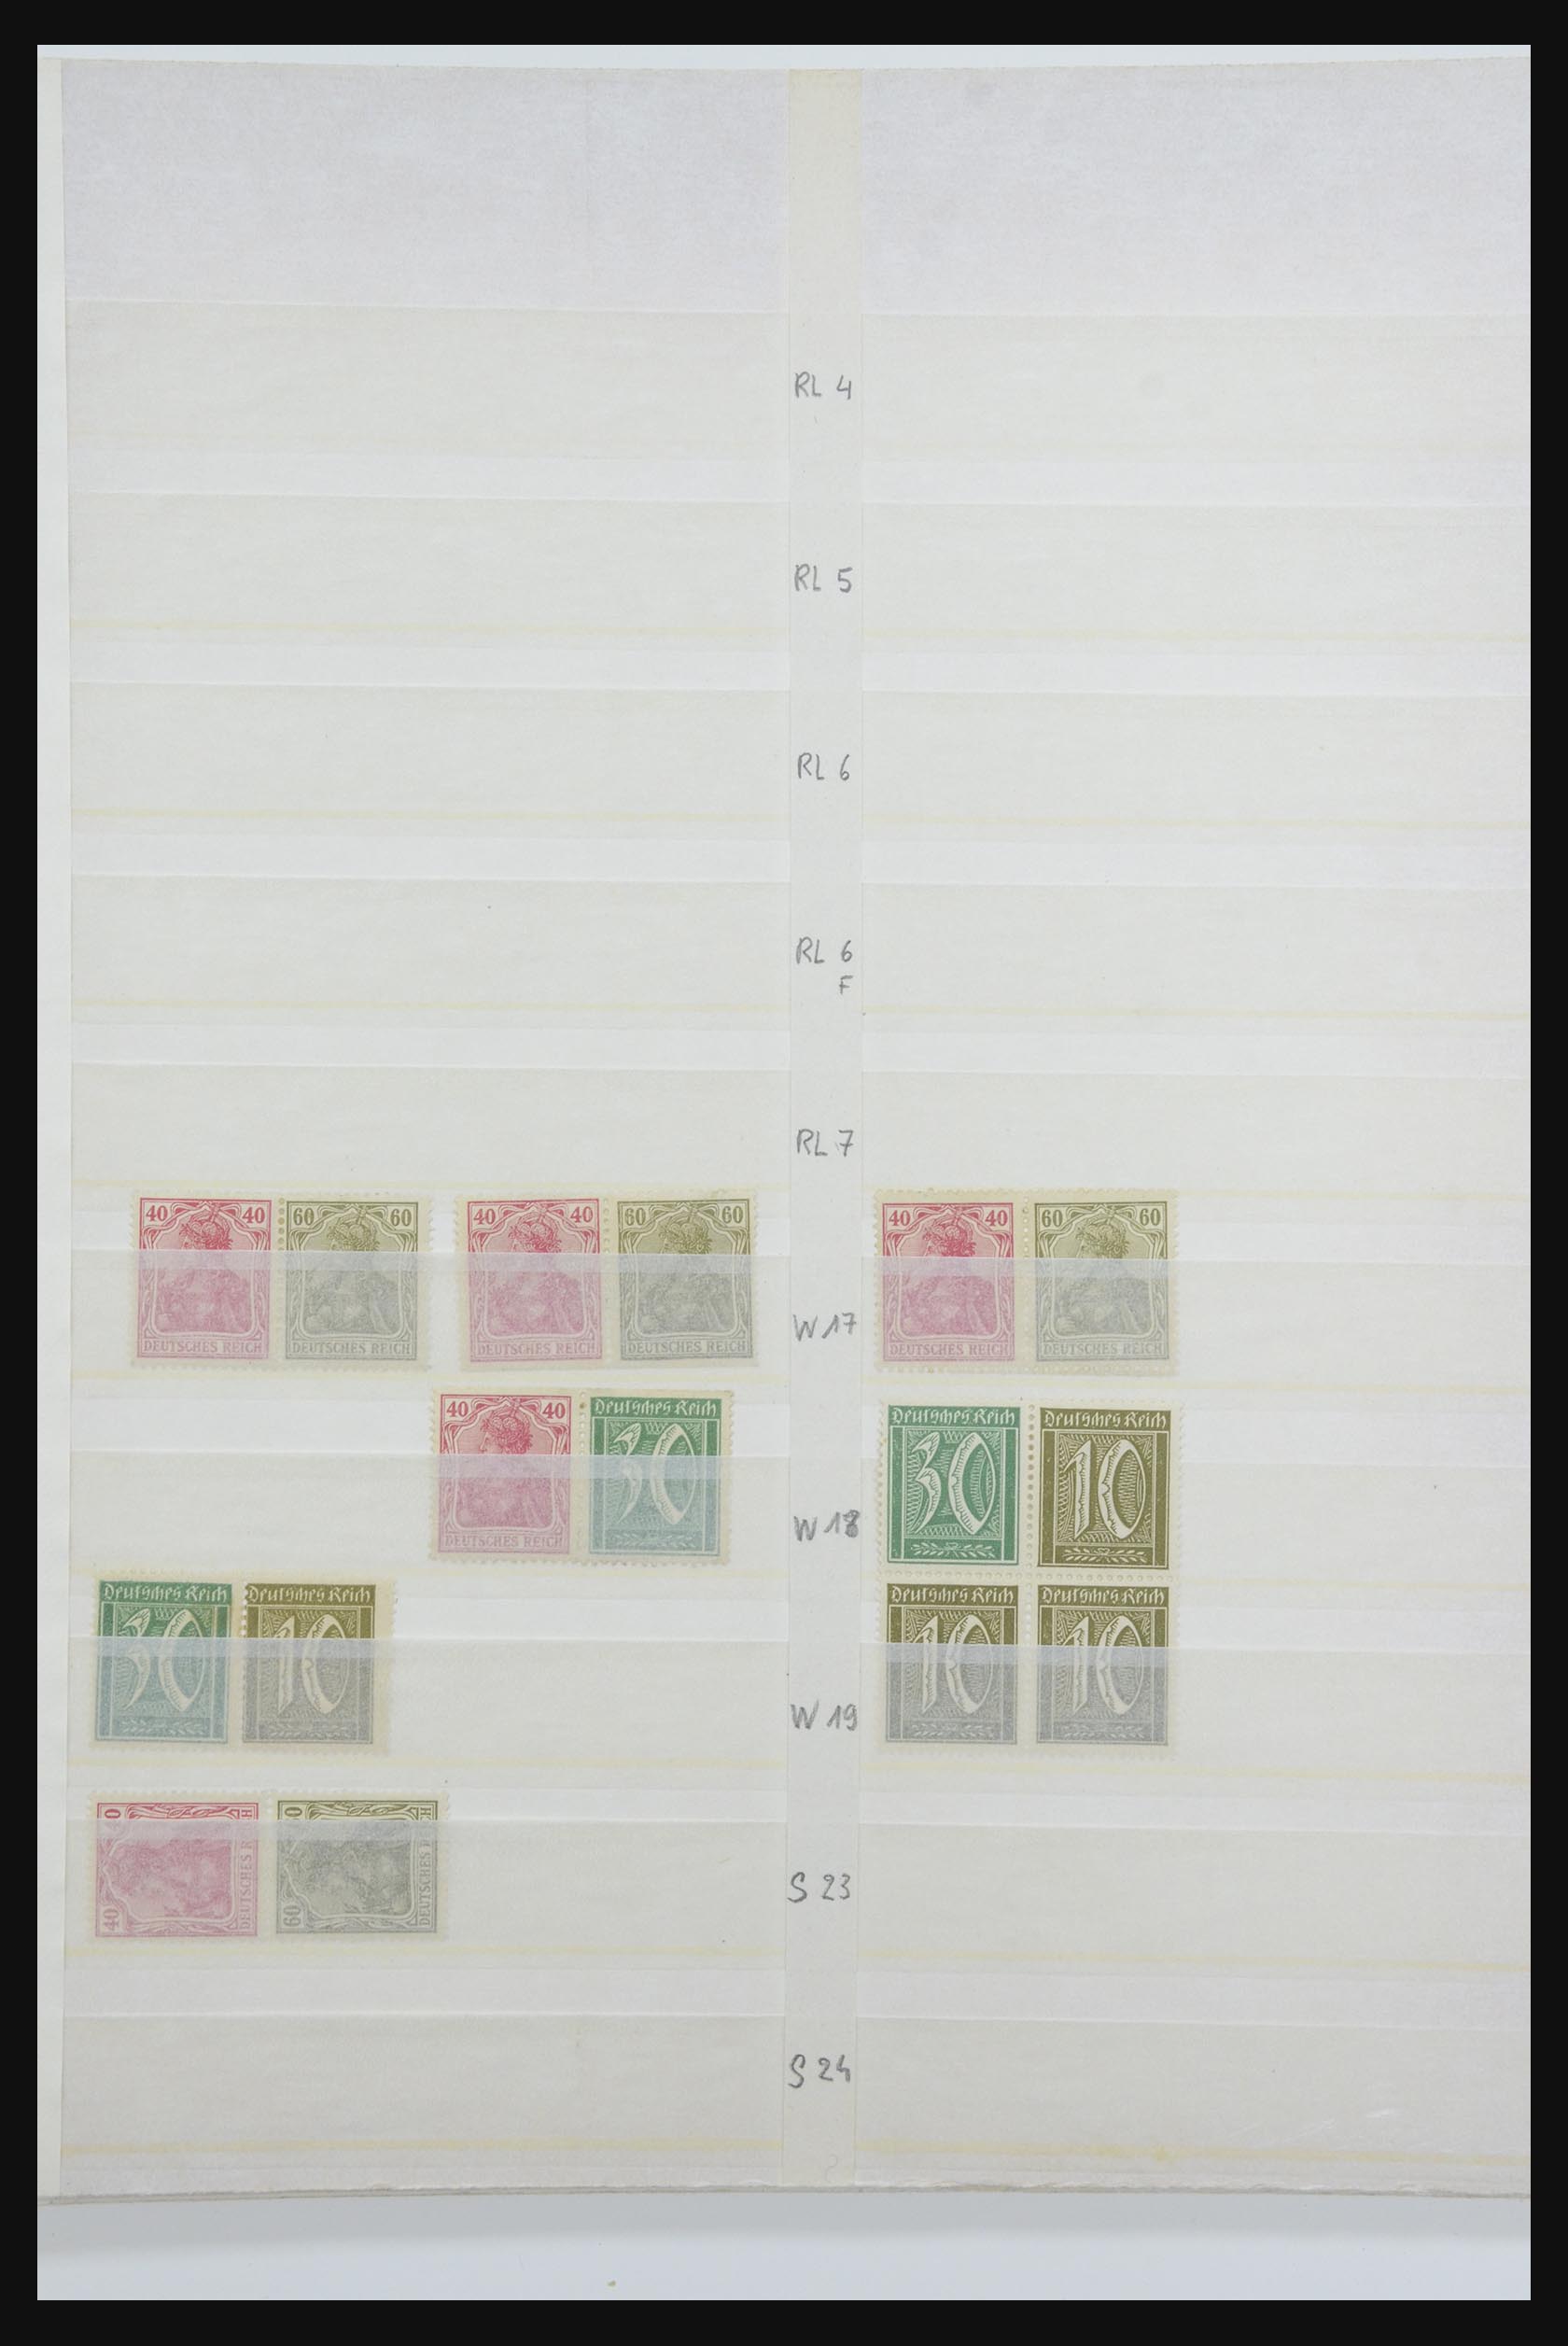 31884 007 - 31884 Duitsland combinaties 1920-1980.